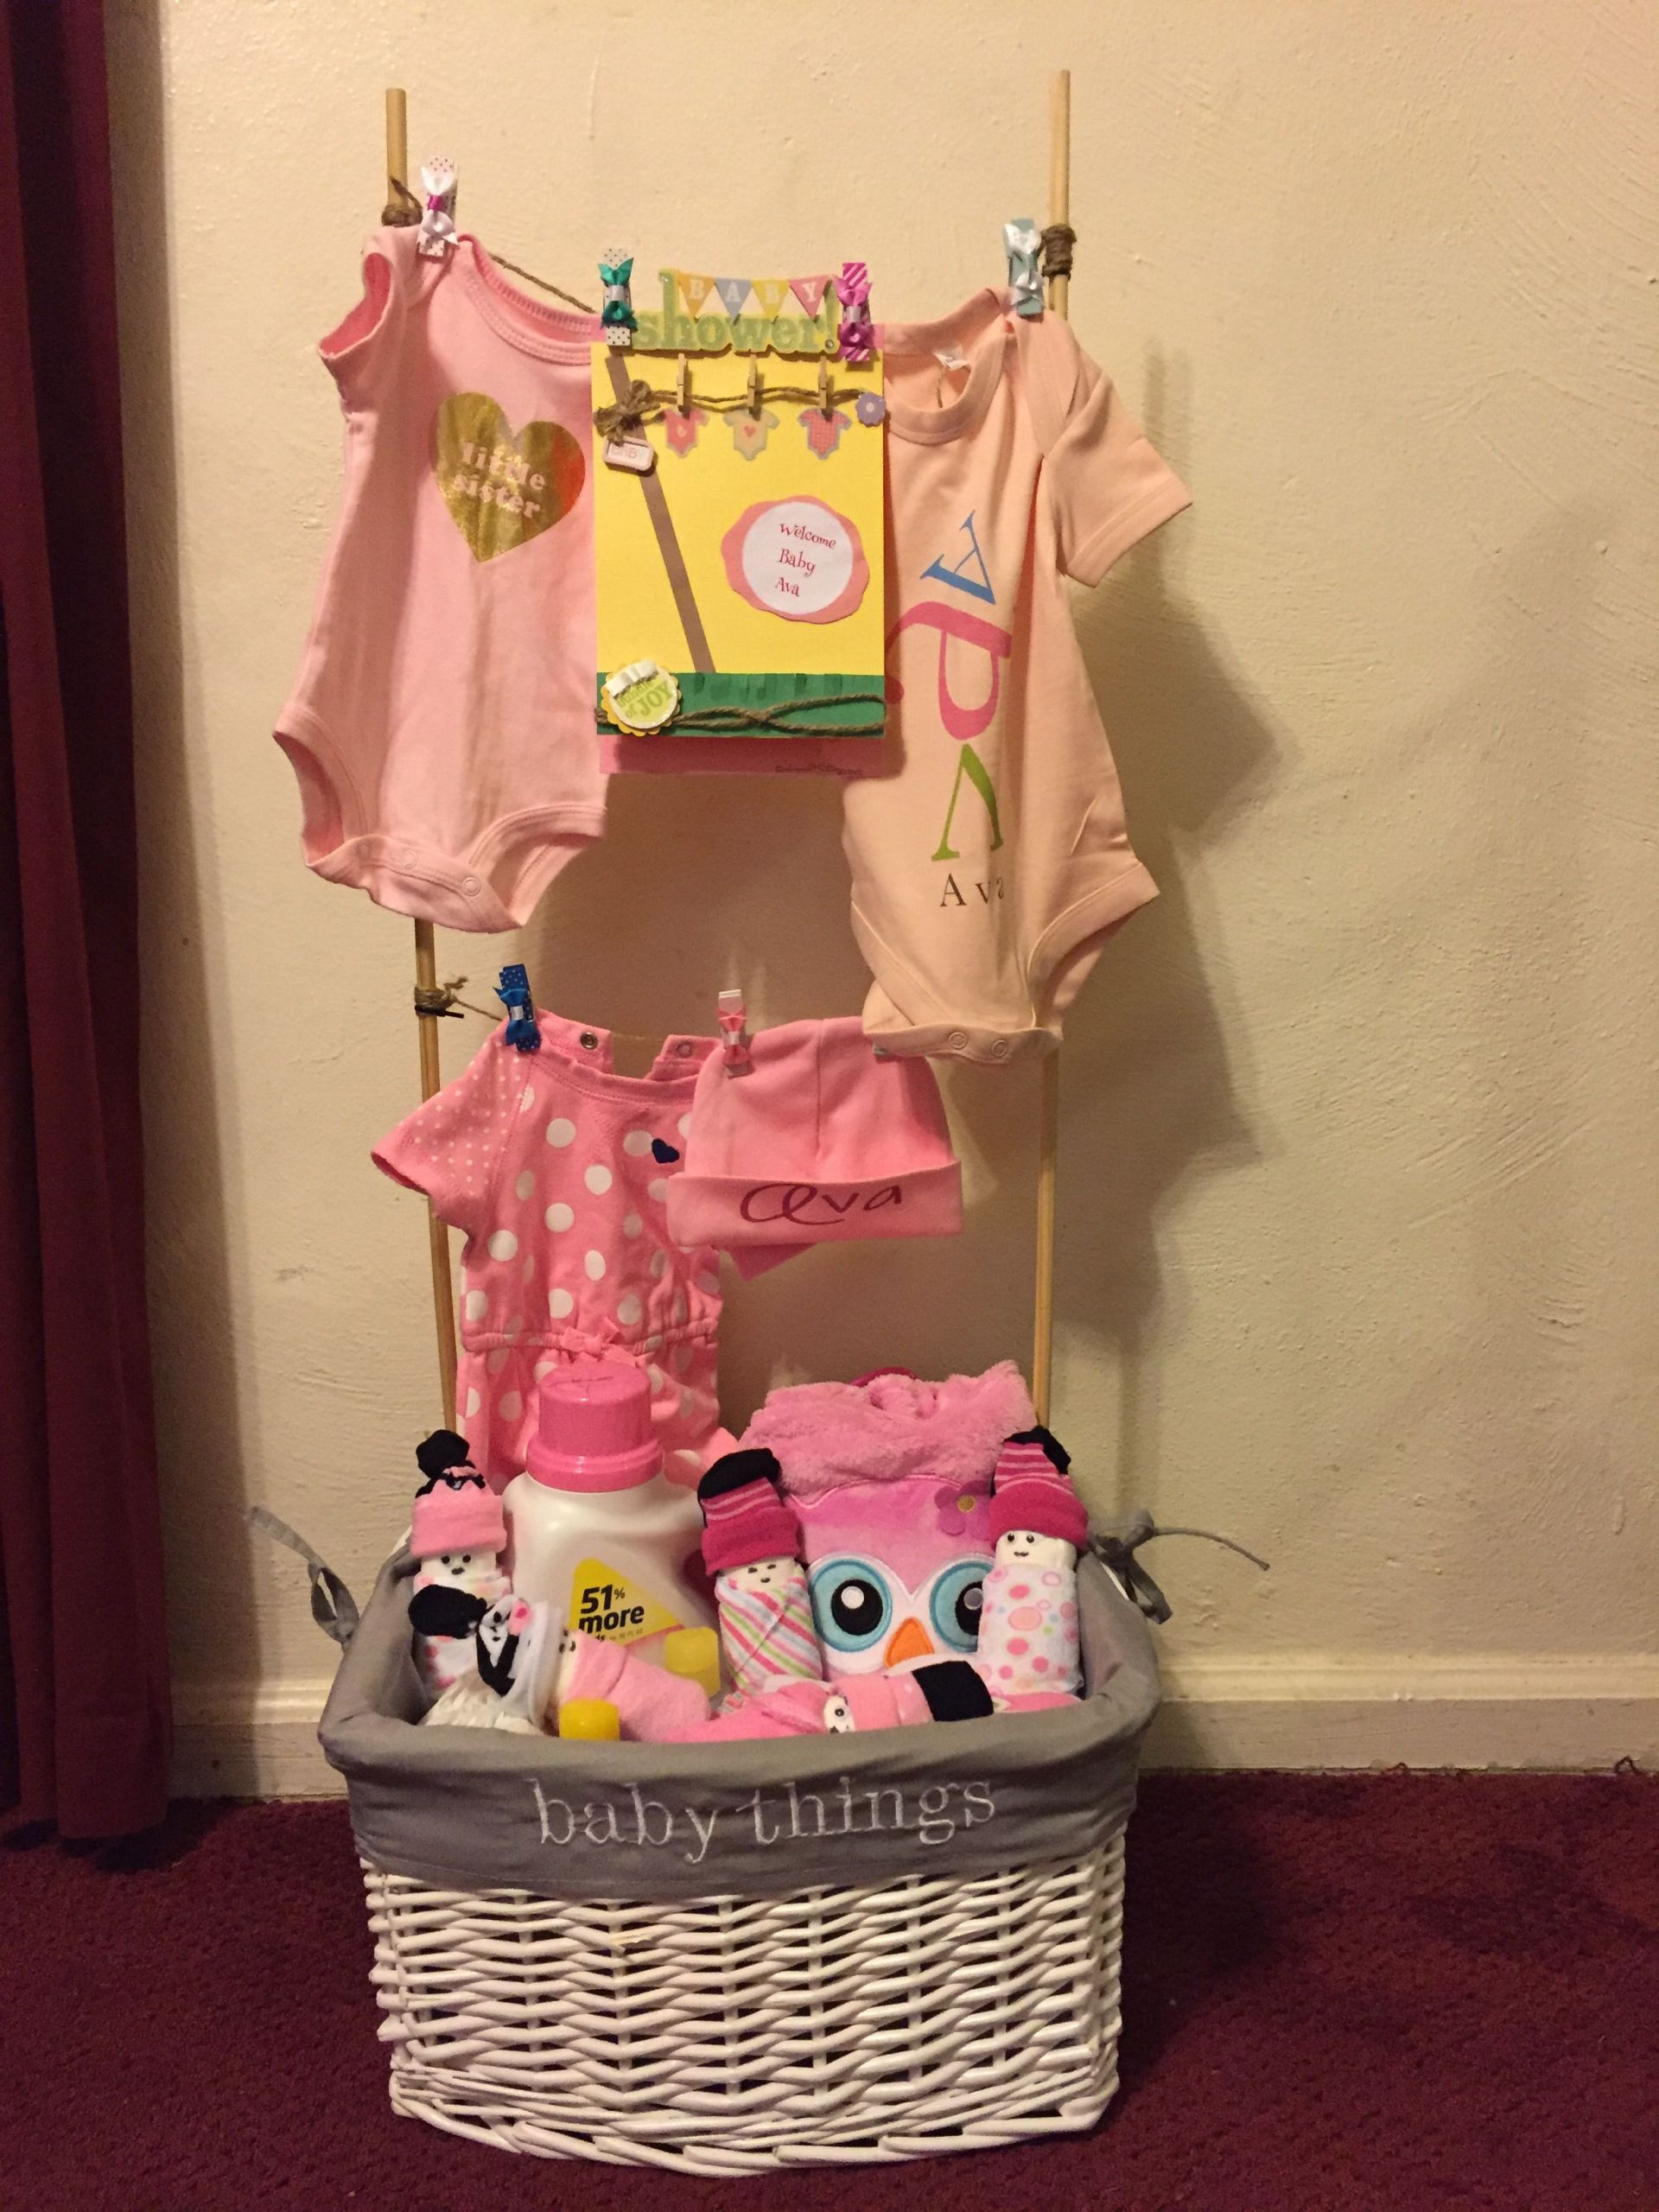 Laundry Basket Gift Ideas
 Baby clothesline laundry basket I made